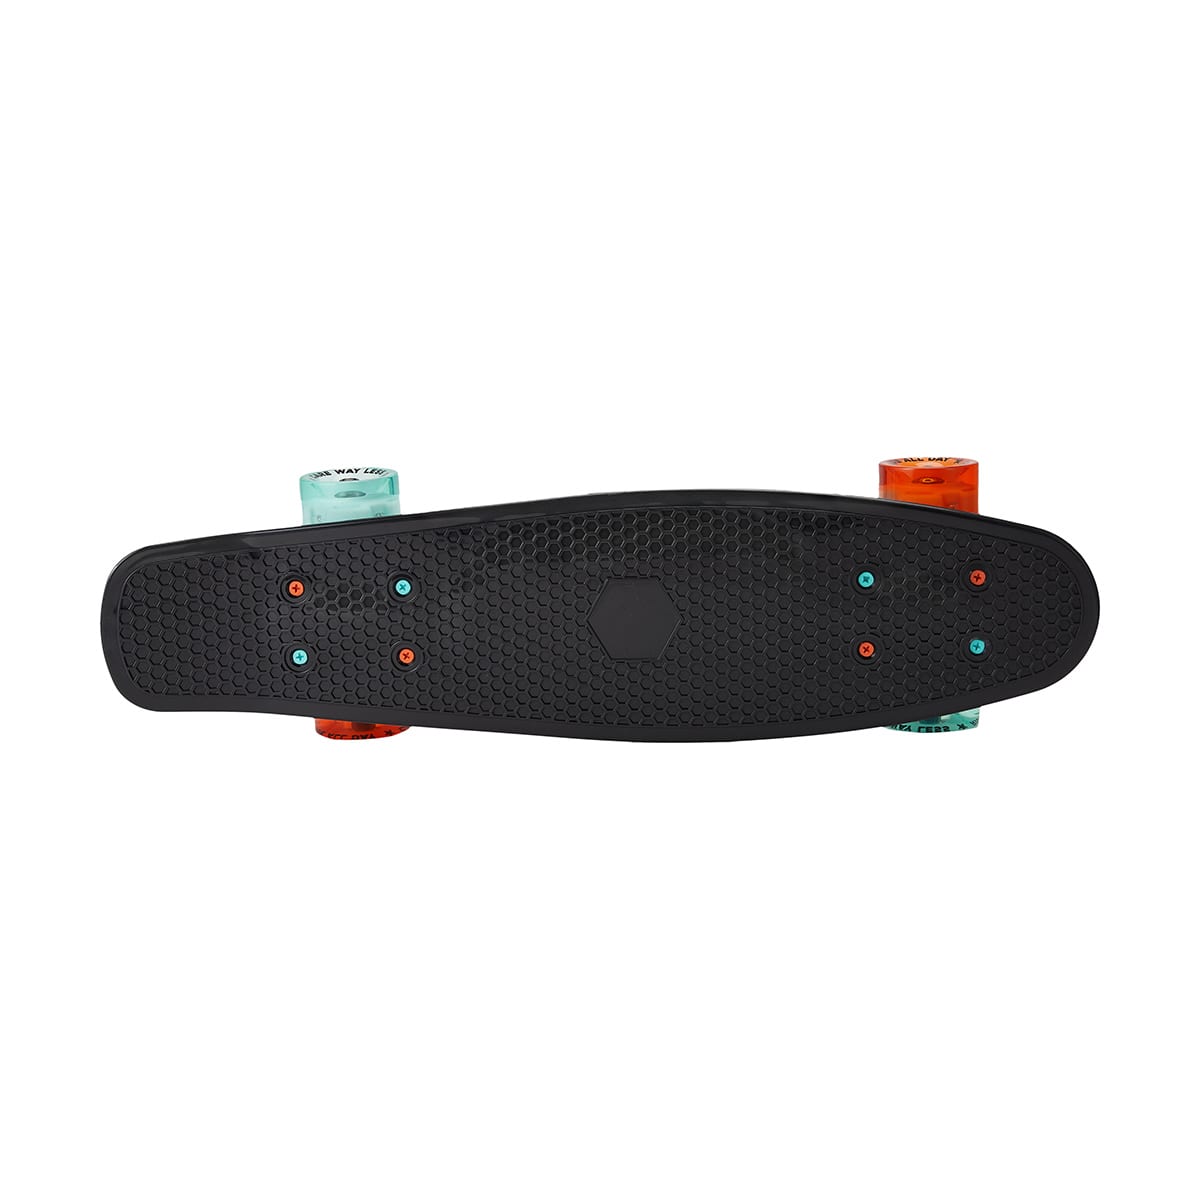 Lightup Wheel Skateboard